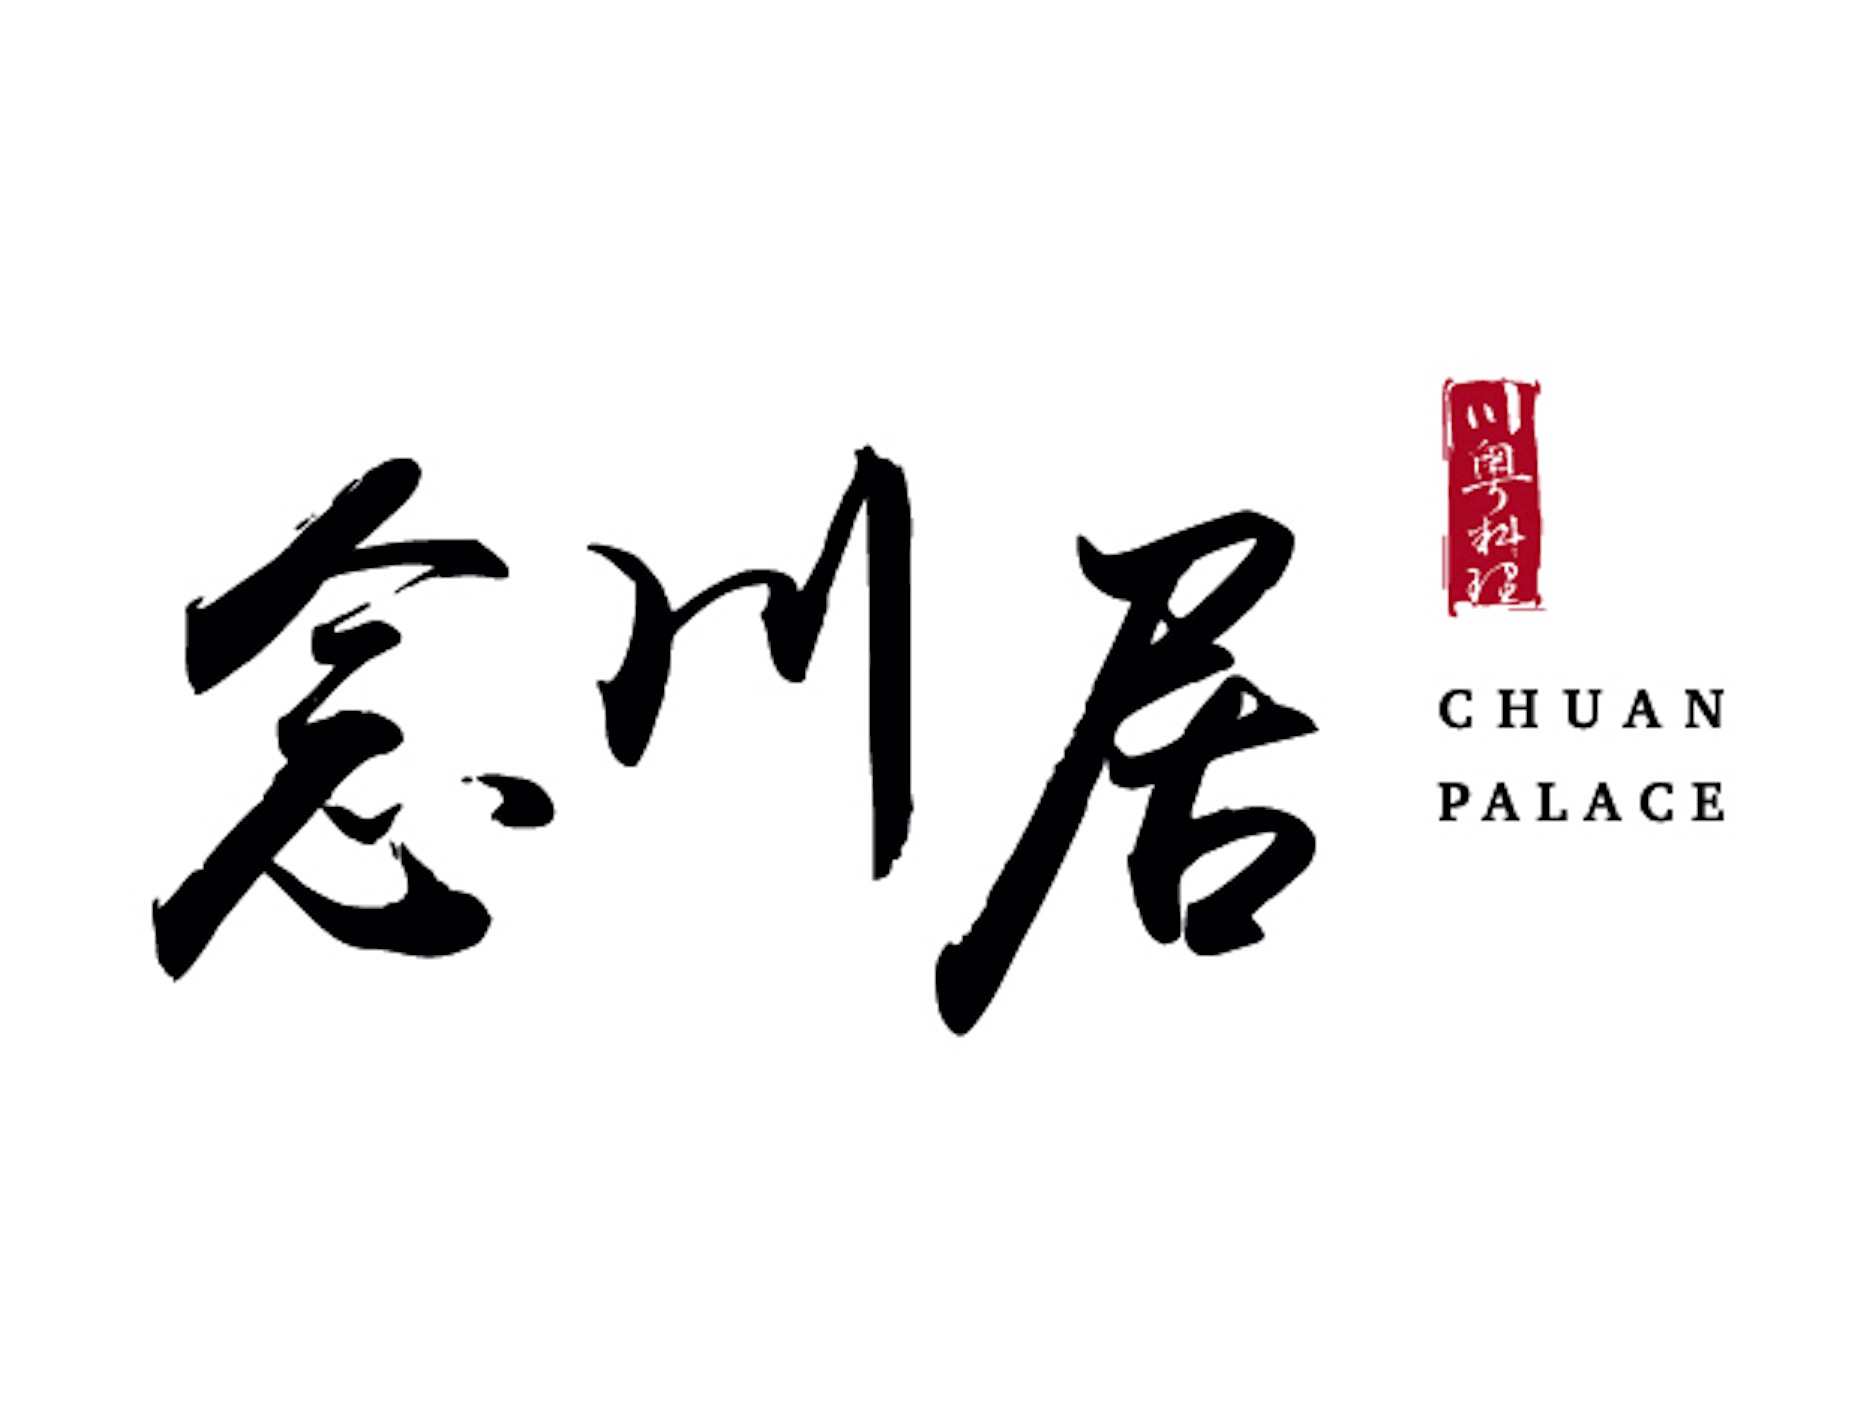 Chuan Palace 念川居 